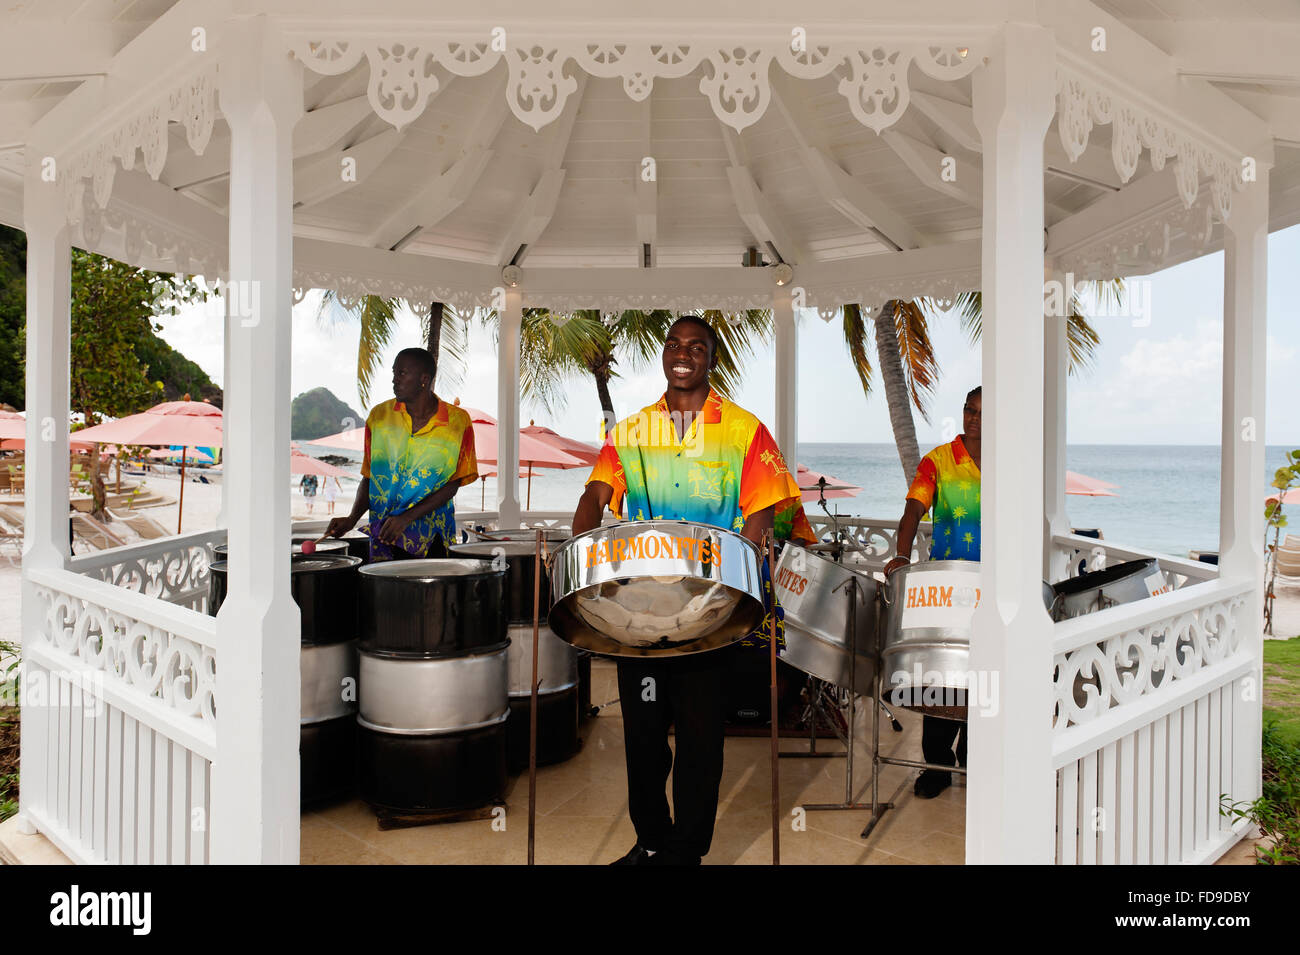 Stahl-Trommler spielen in Pagode am Strand, St. Lucia, kleine Antillen, Karibik Stockfoto